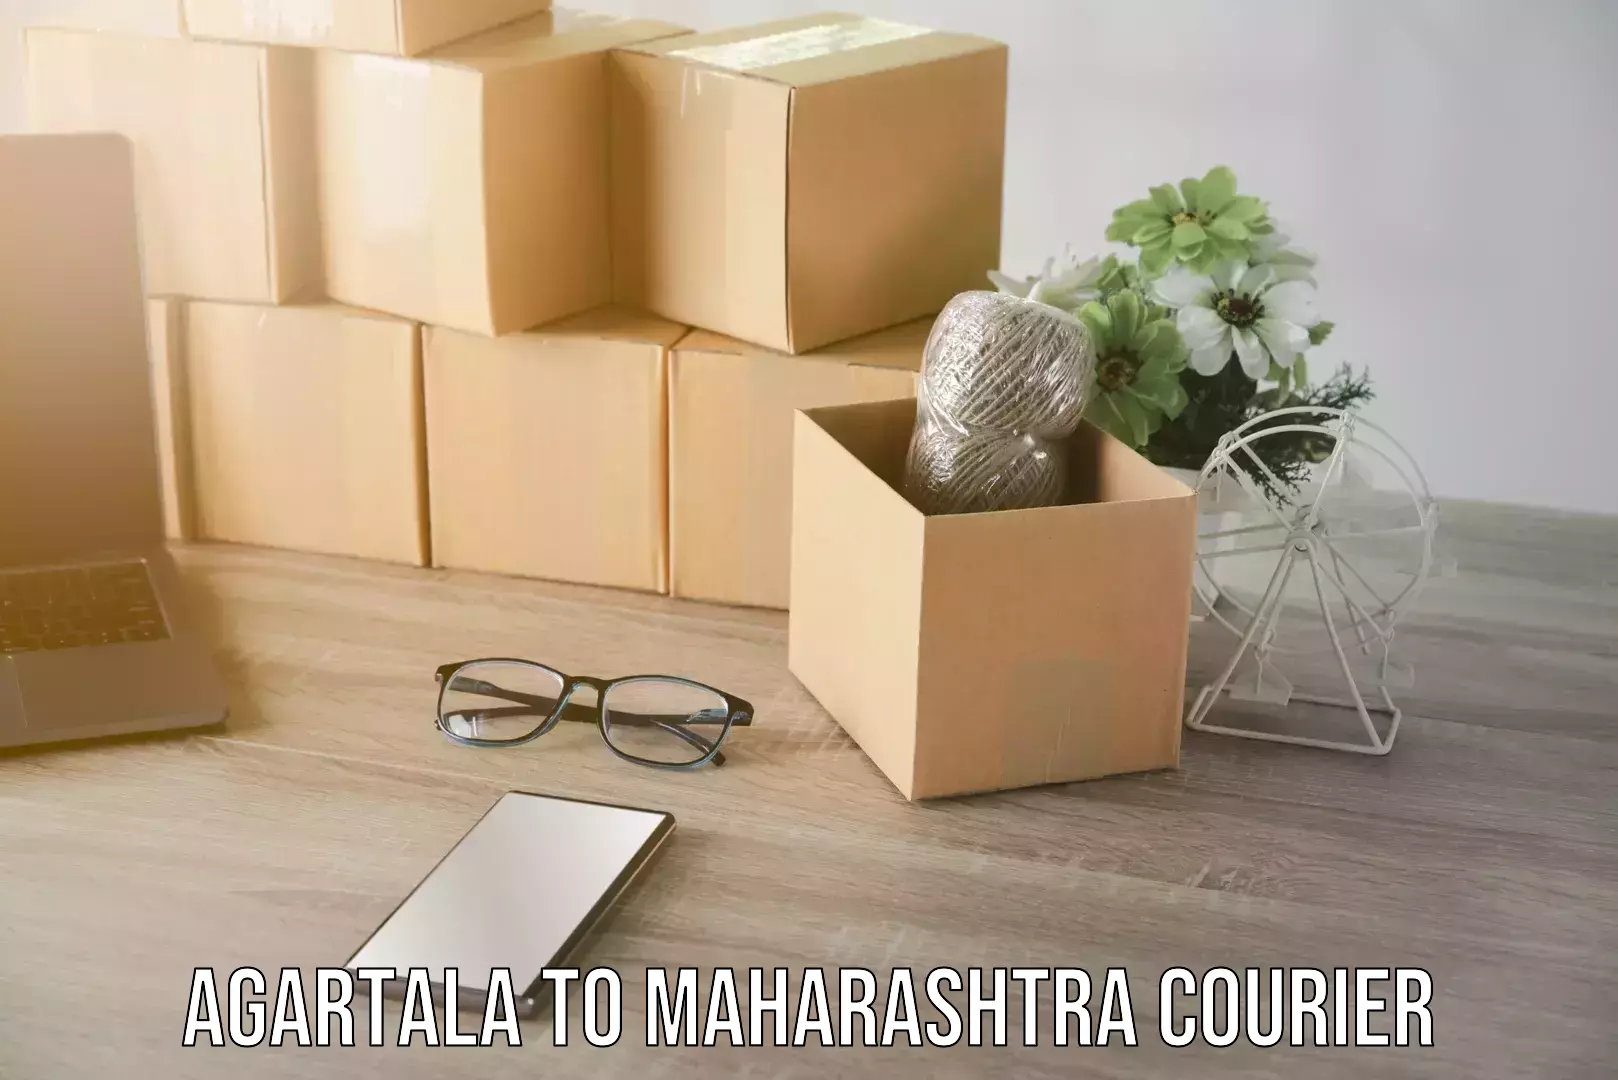 Courier service innovation in Agartala to Maharashtra